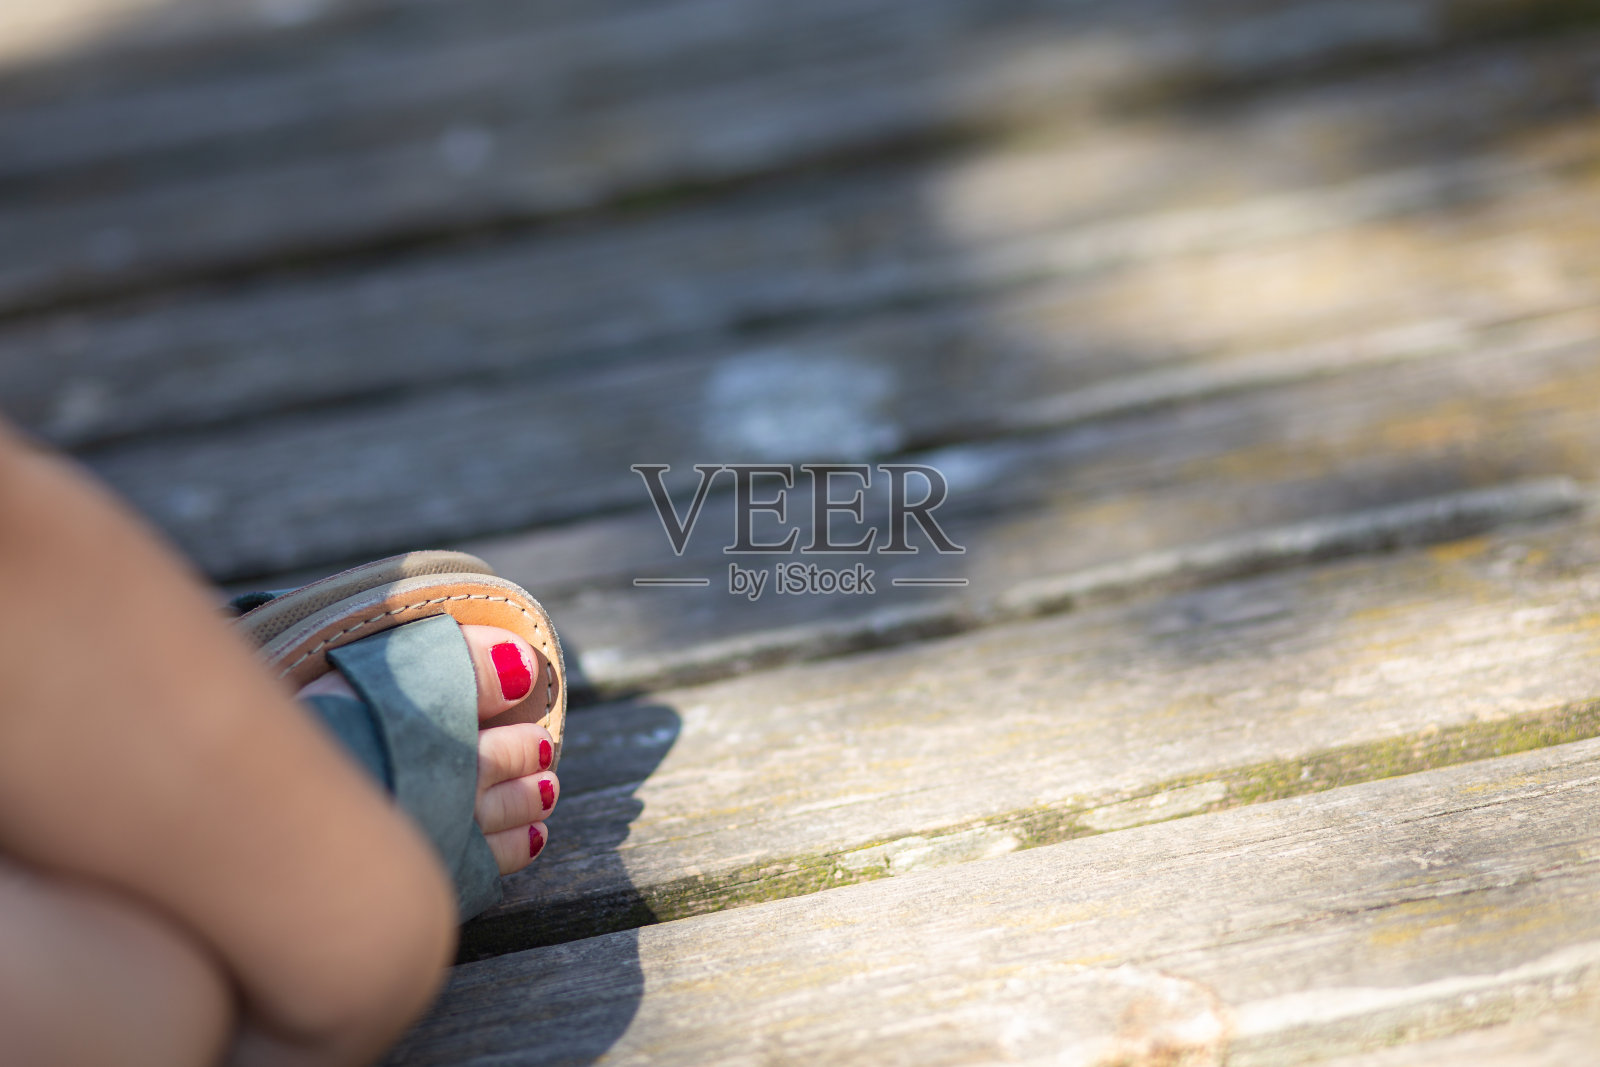 木制地板上的小女孩脚趾上的凉鞋上涂着红色的钉子照片摄影图片